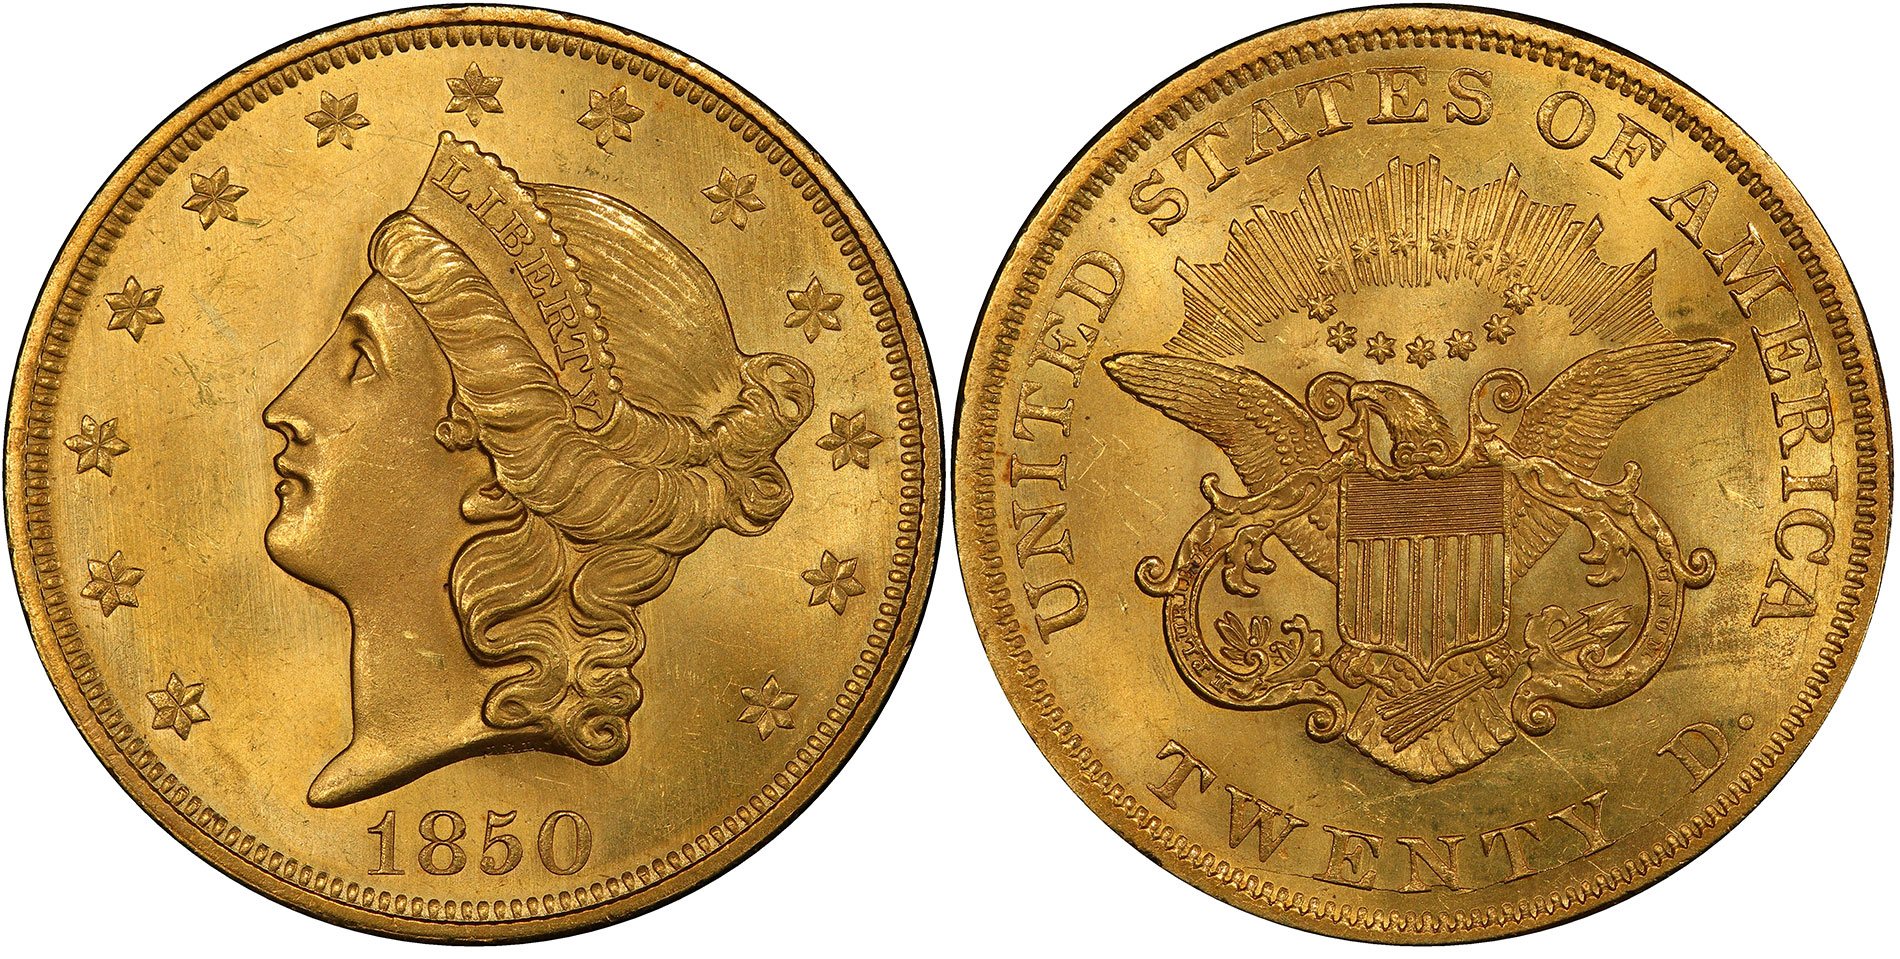 Hãy khám phá bức ảnh đồng xu vàng 20 đô la lưu thông để tìm hiểu về giá trị và sức hút của loại đồng xu quý giá này. Bạn sẽ bất ngờ khi biết được nguồn gốc và lịch sử của loại đồng tiền này.